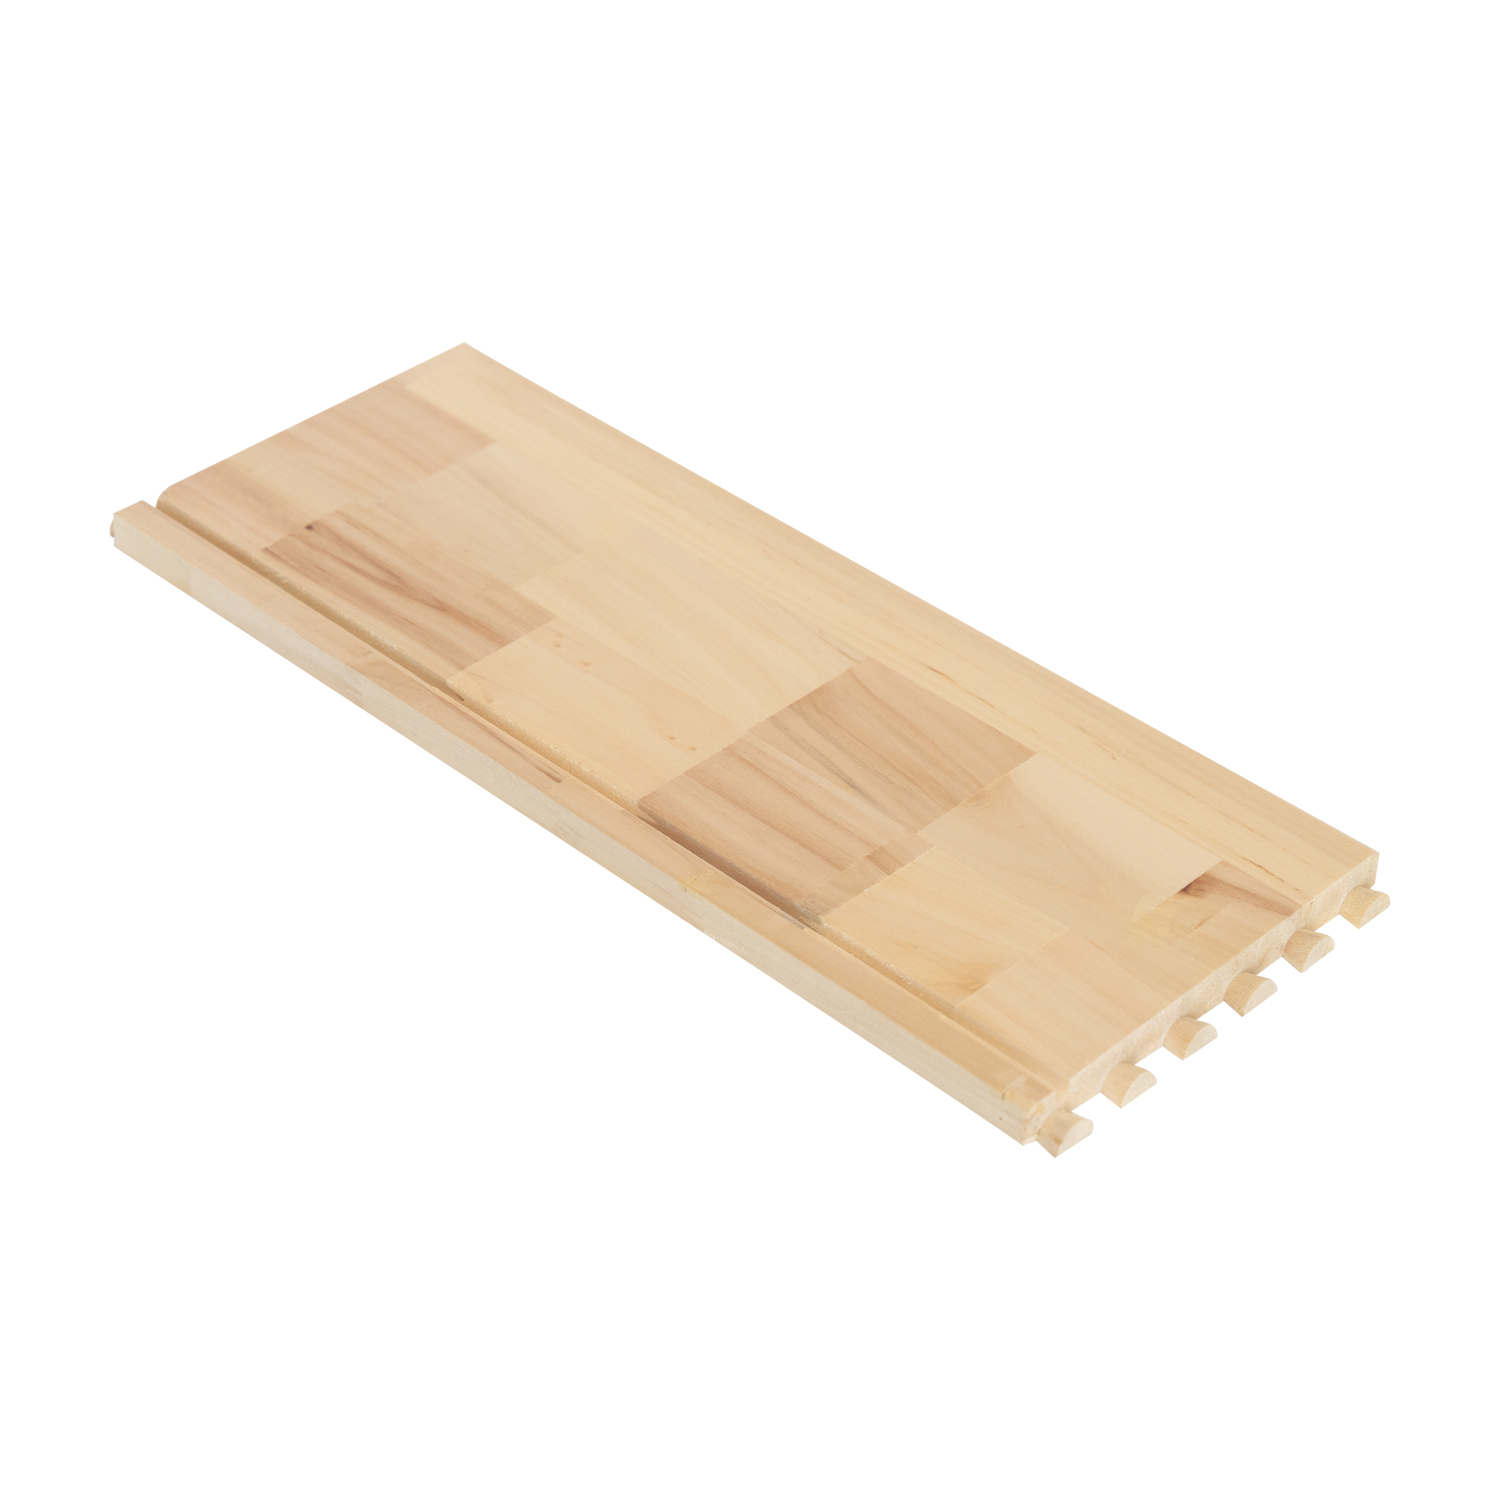 paulownia và gỗ cây dương để làm mặt ngăn kéo và mặt sau hộp các thành phần đồ nội thất